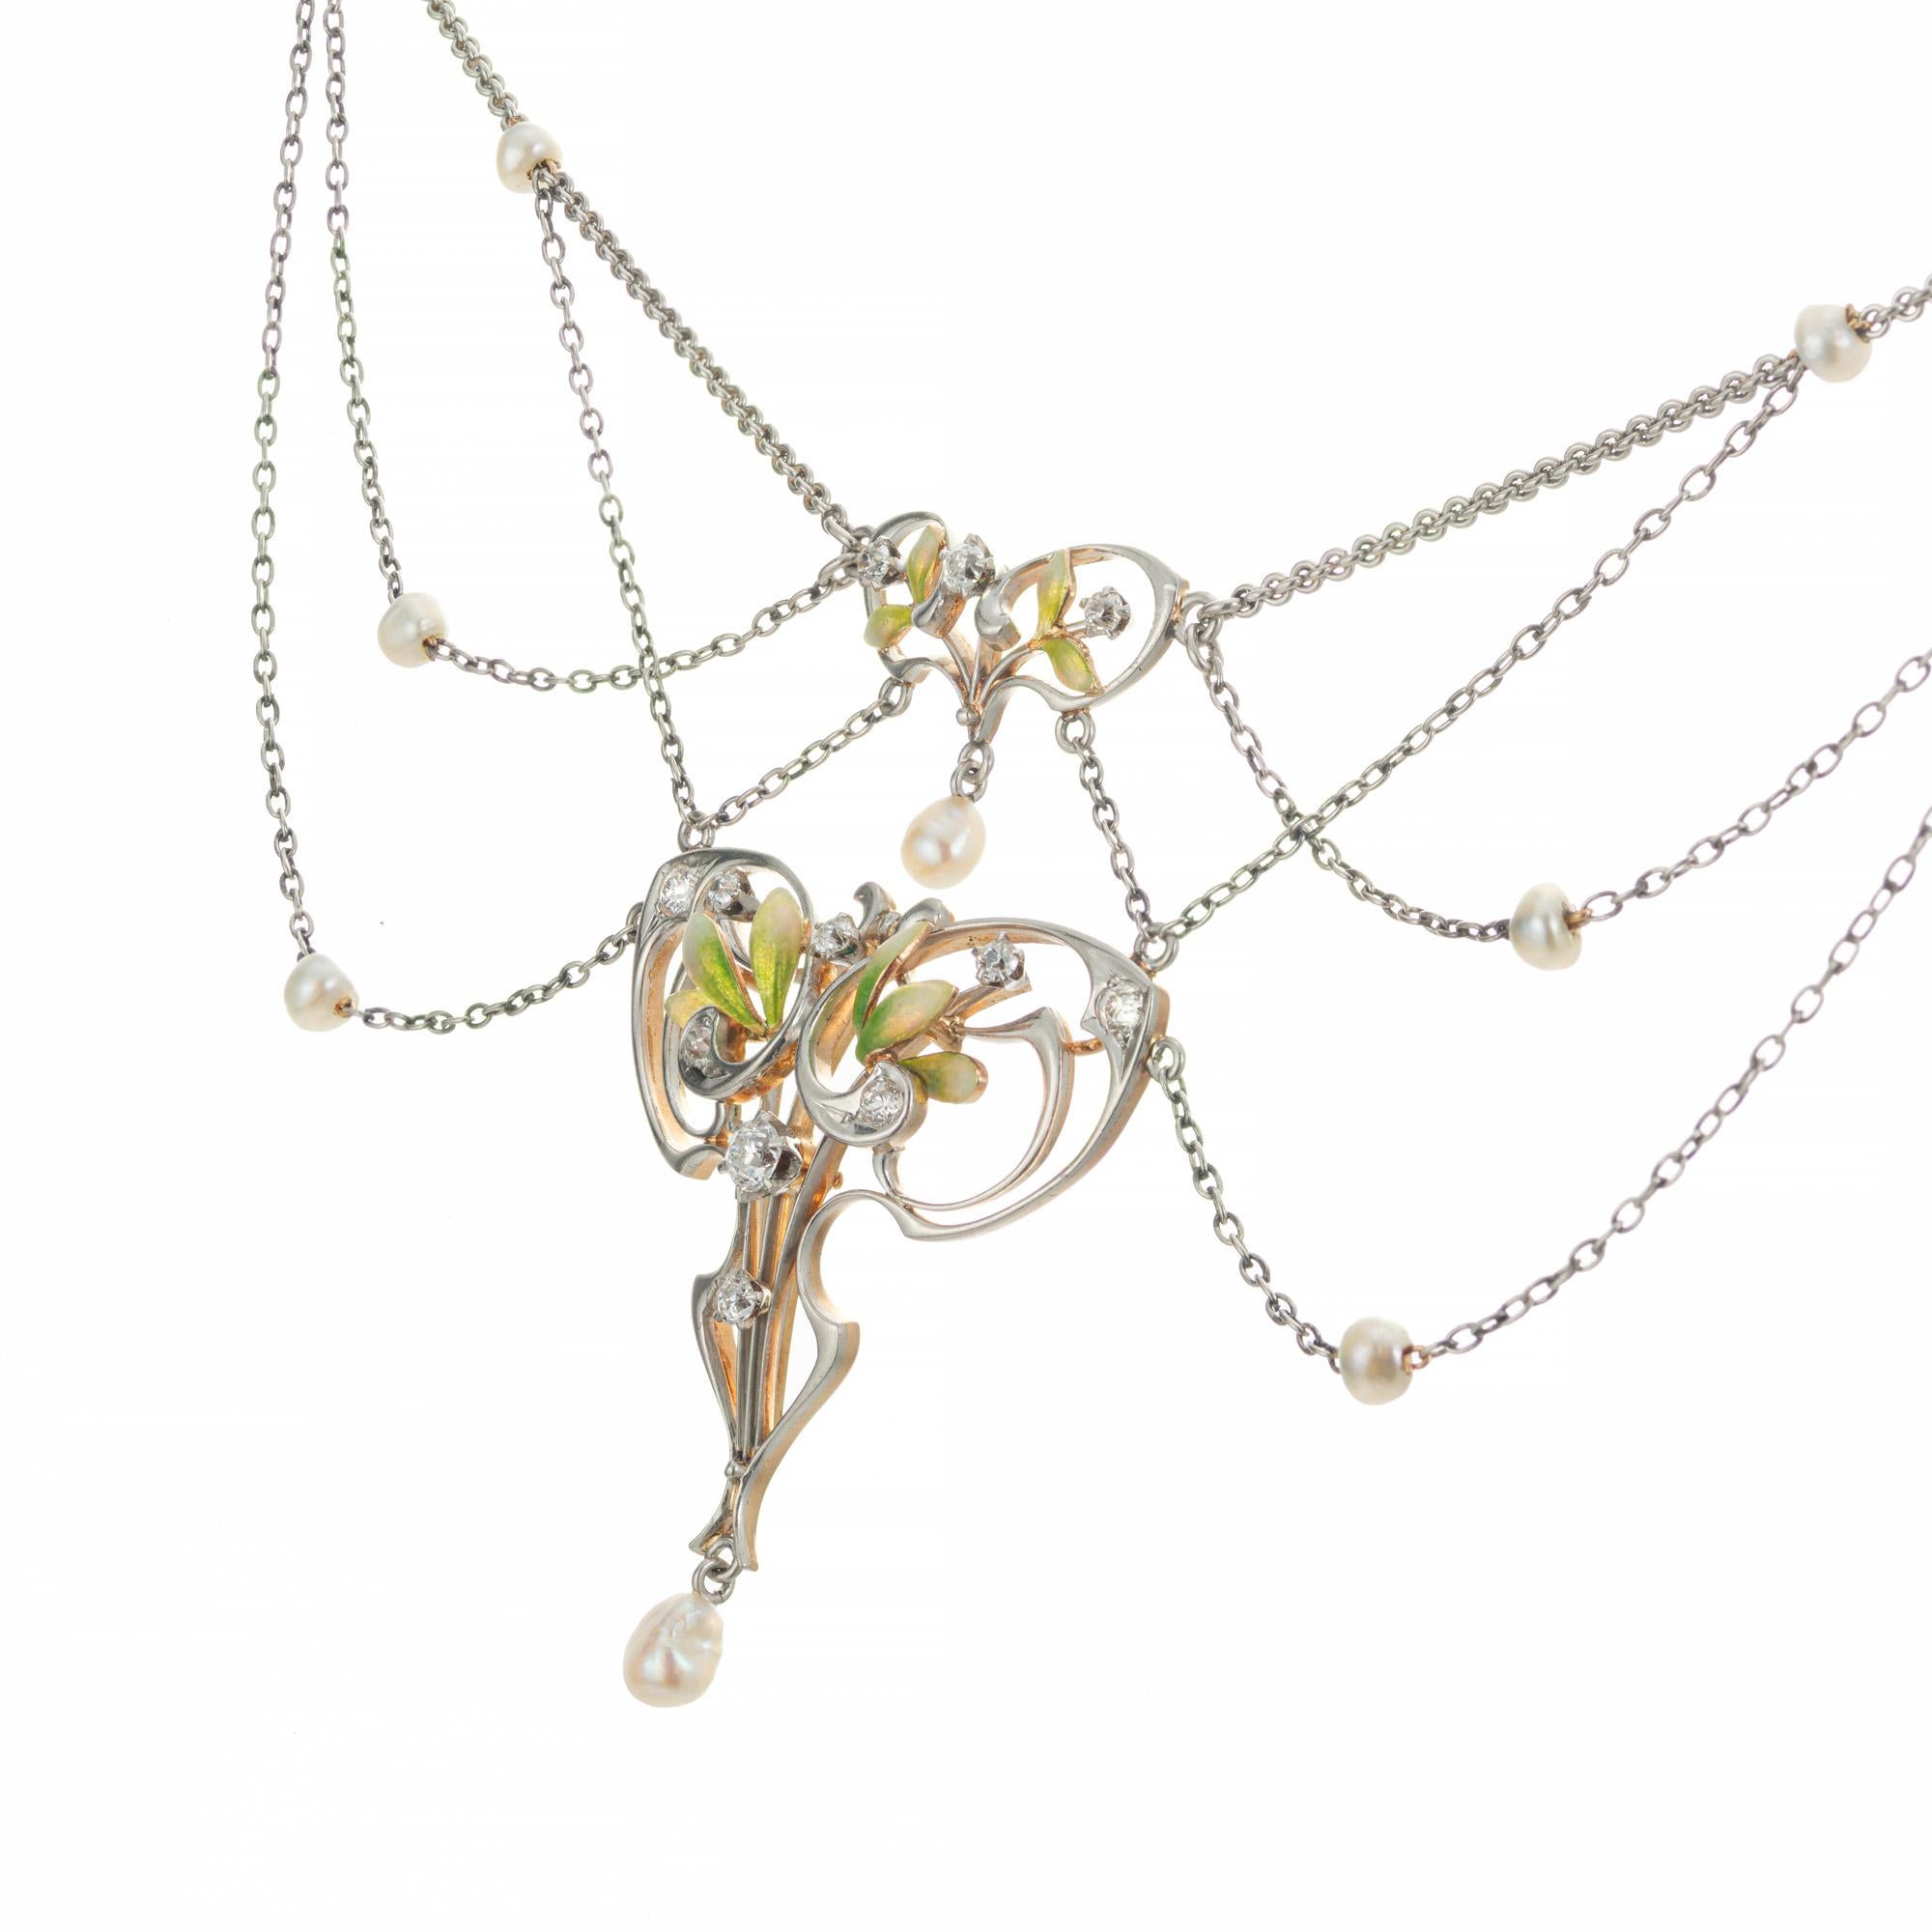 Jugendstil-Halskette mit Perlen- und Diamantanhängern. CIRCA 1890er Jahre. Der florale Emaille-Anhänger ist auf der Vorderseite aus Platin und auf der Rückseite aus 14 Karat Roségold. Eine GIA-zertifizierte weiße Salzwasserperle, 9 runde weiße